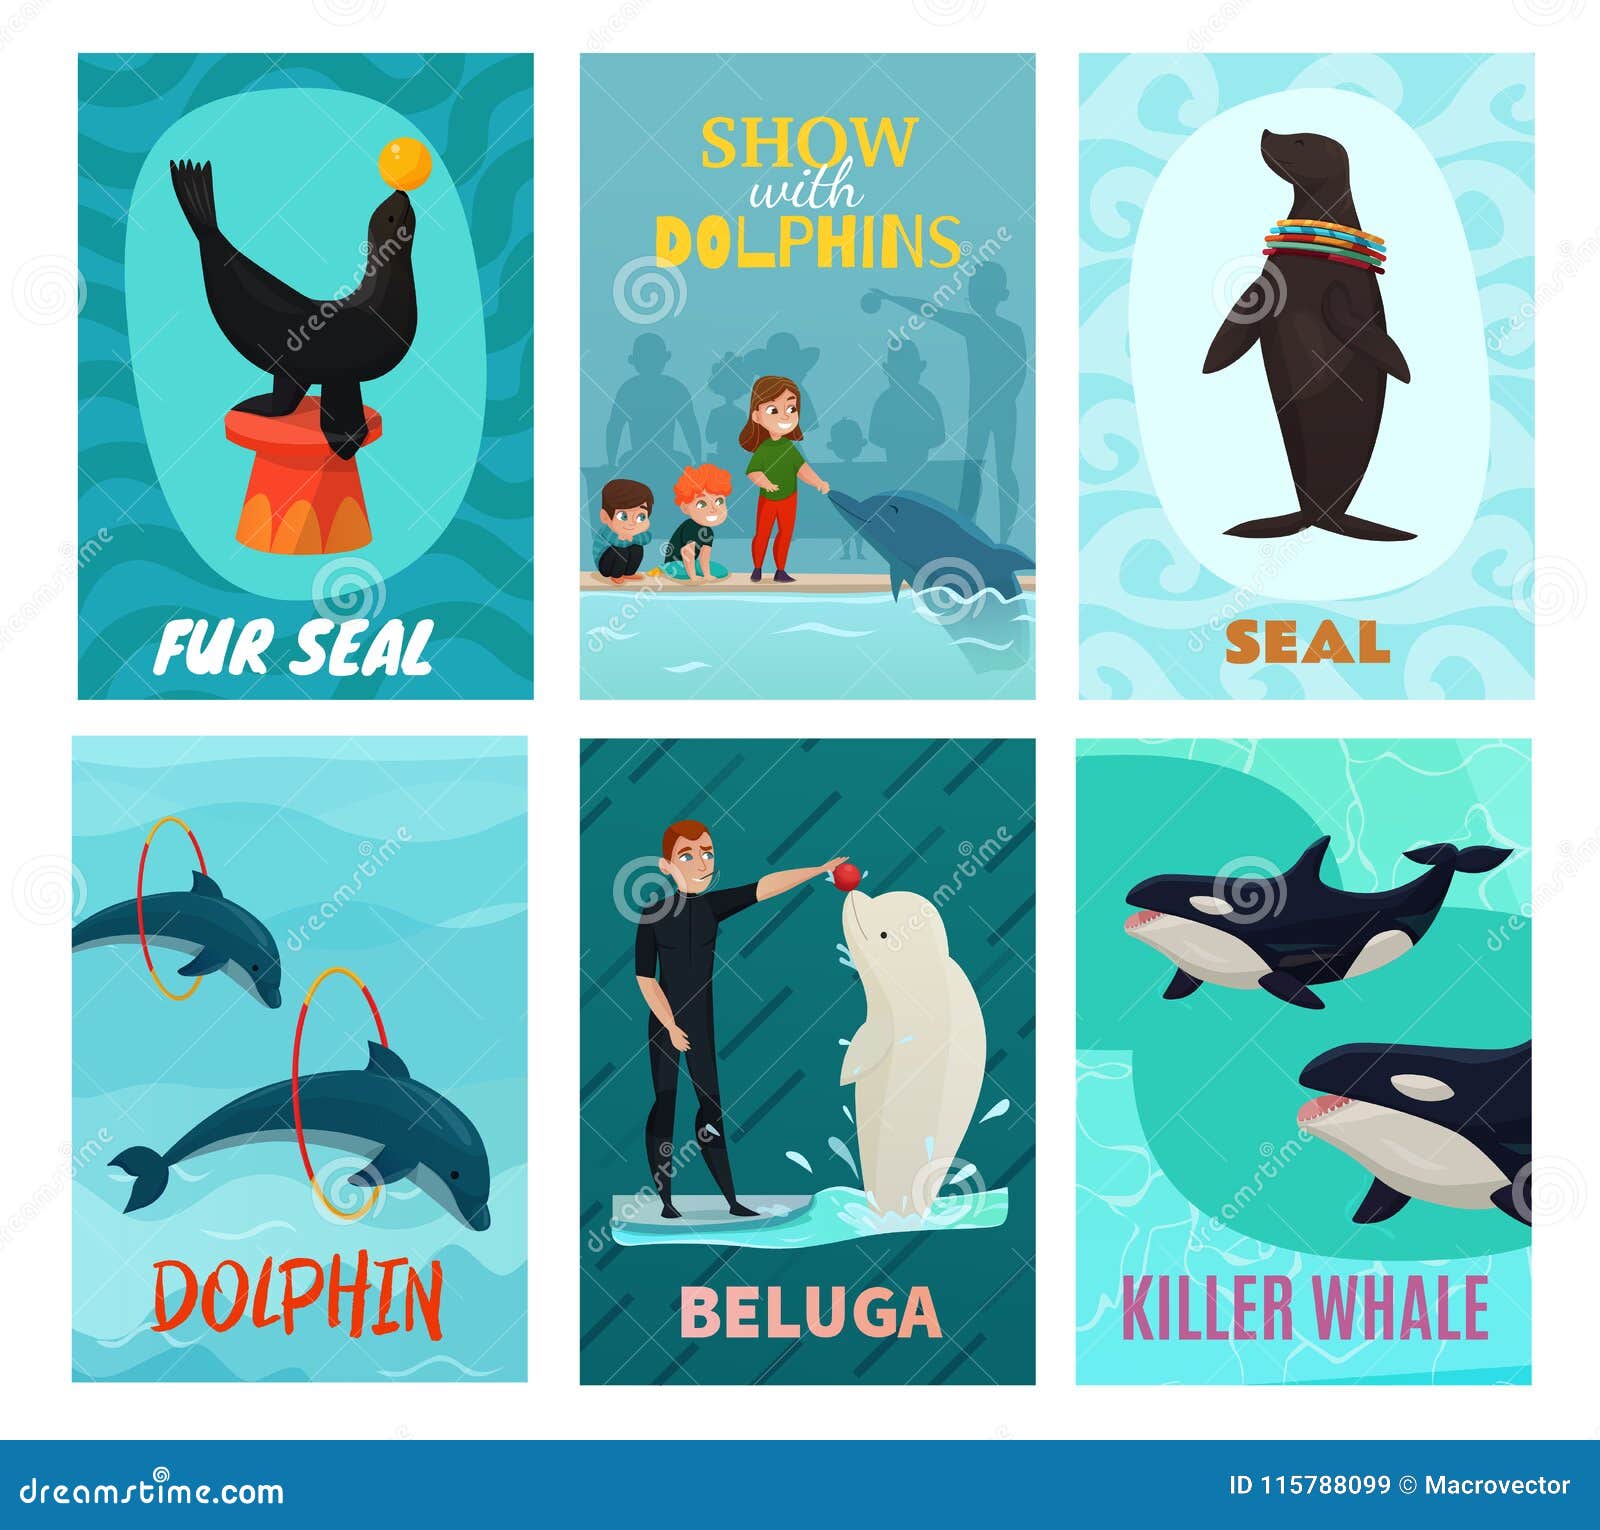 dolphinarium show cards set